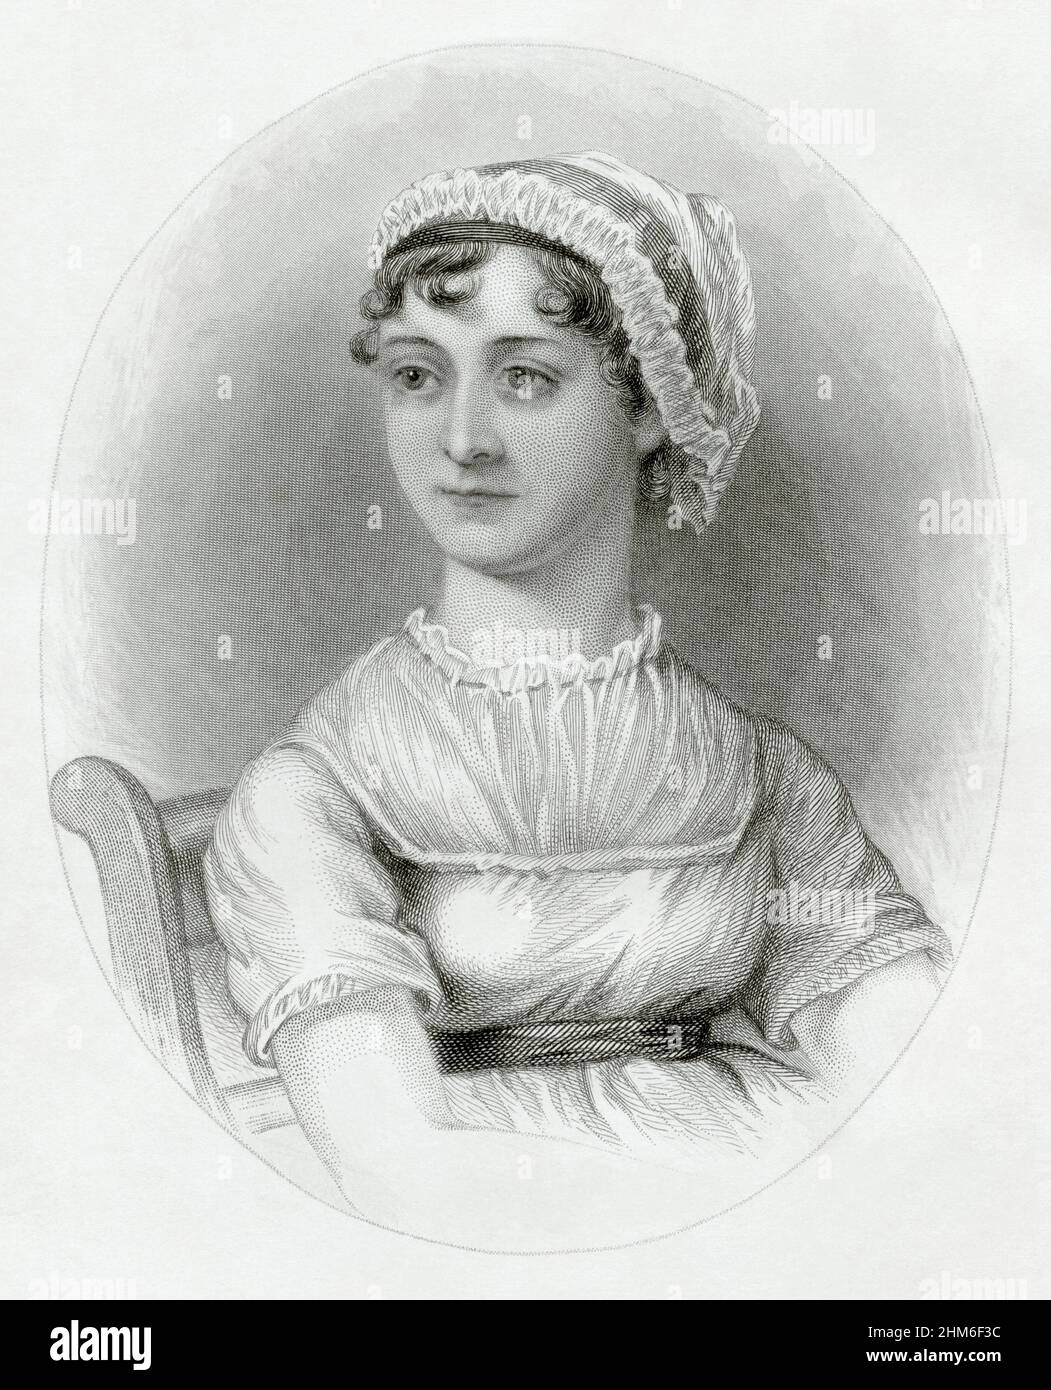 Ritratto dello scrittore inglese Jane Austen, autore di Pride e Prejudice. Si basa sullo schizzo realizzato nel 1810 (quando Jane aveva 35 anni) dalla sorella Cassandra. Foto Stock